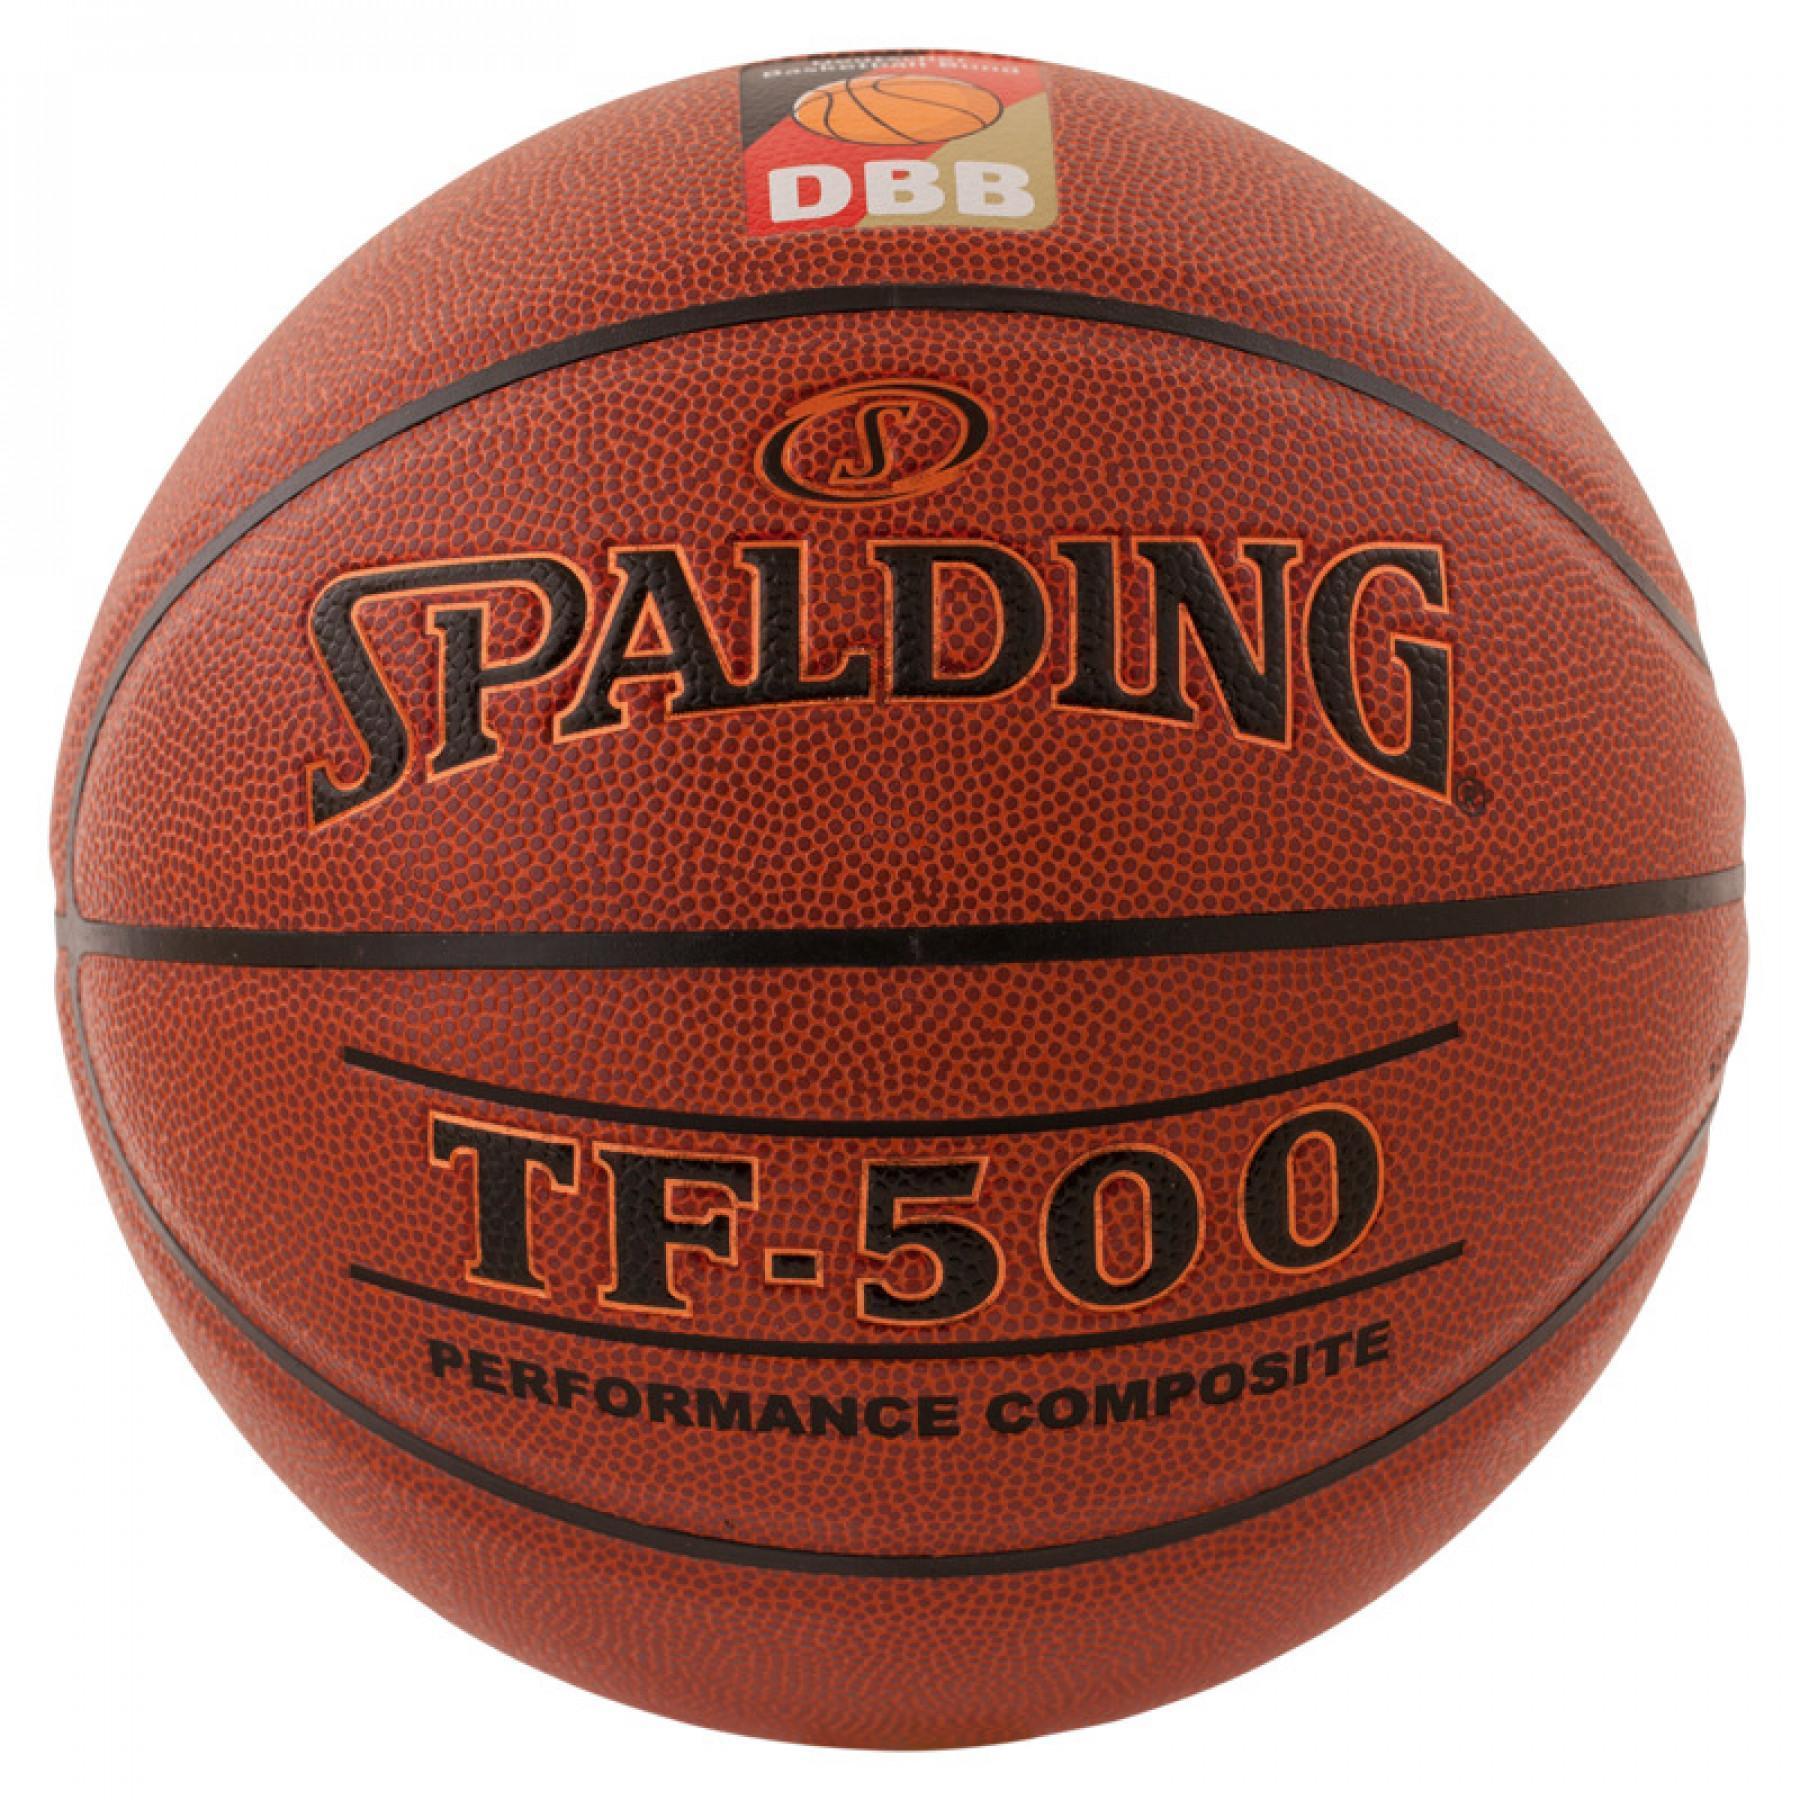 Ballong Spalding DBB Tf500 (74-590z)